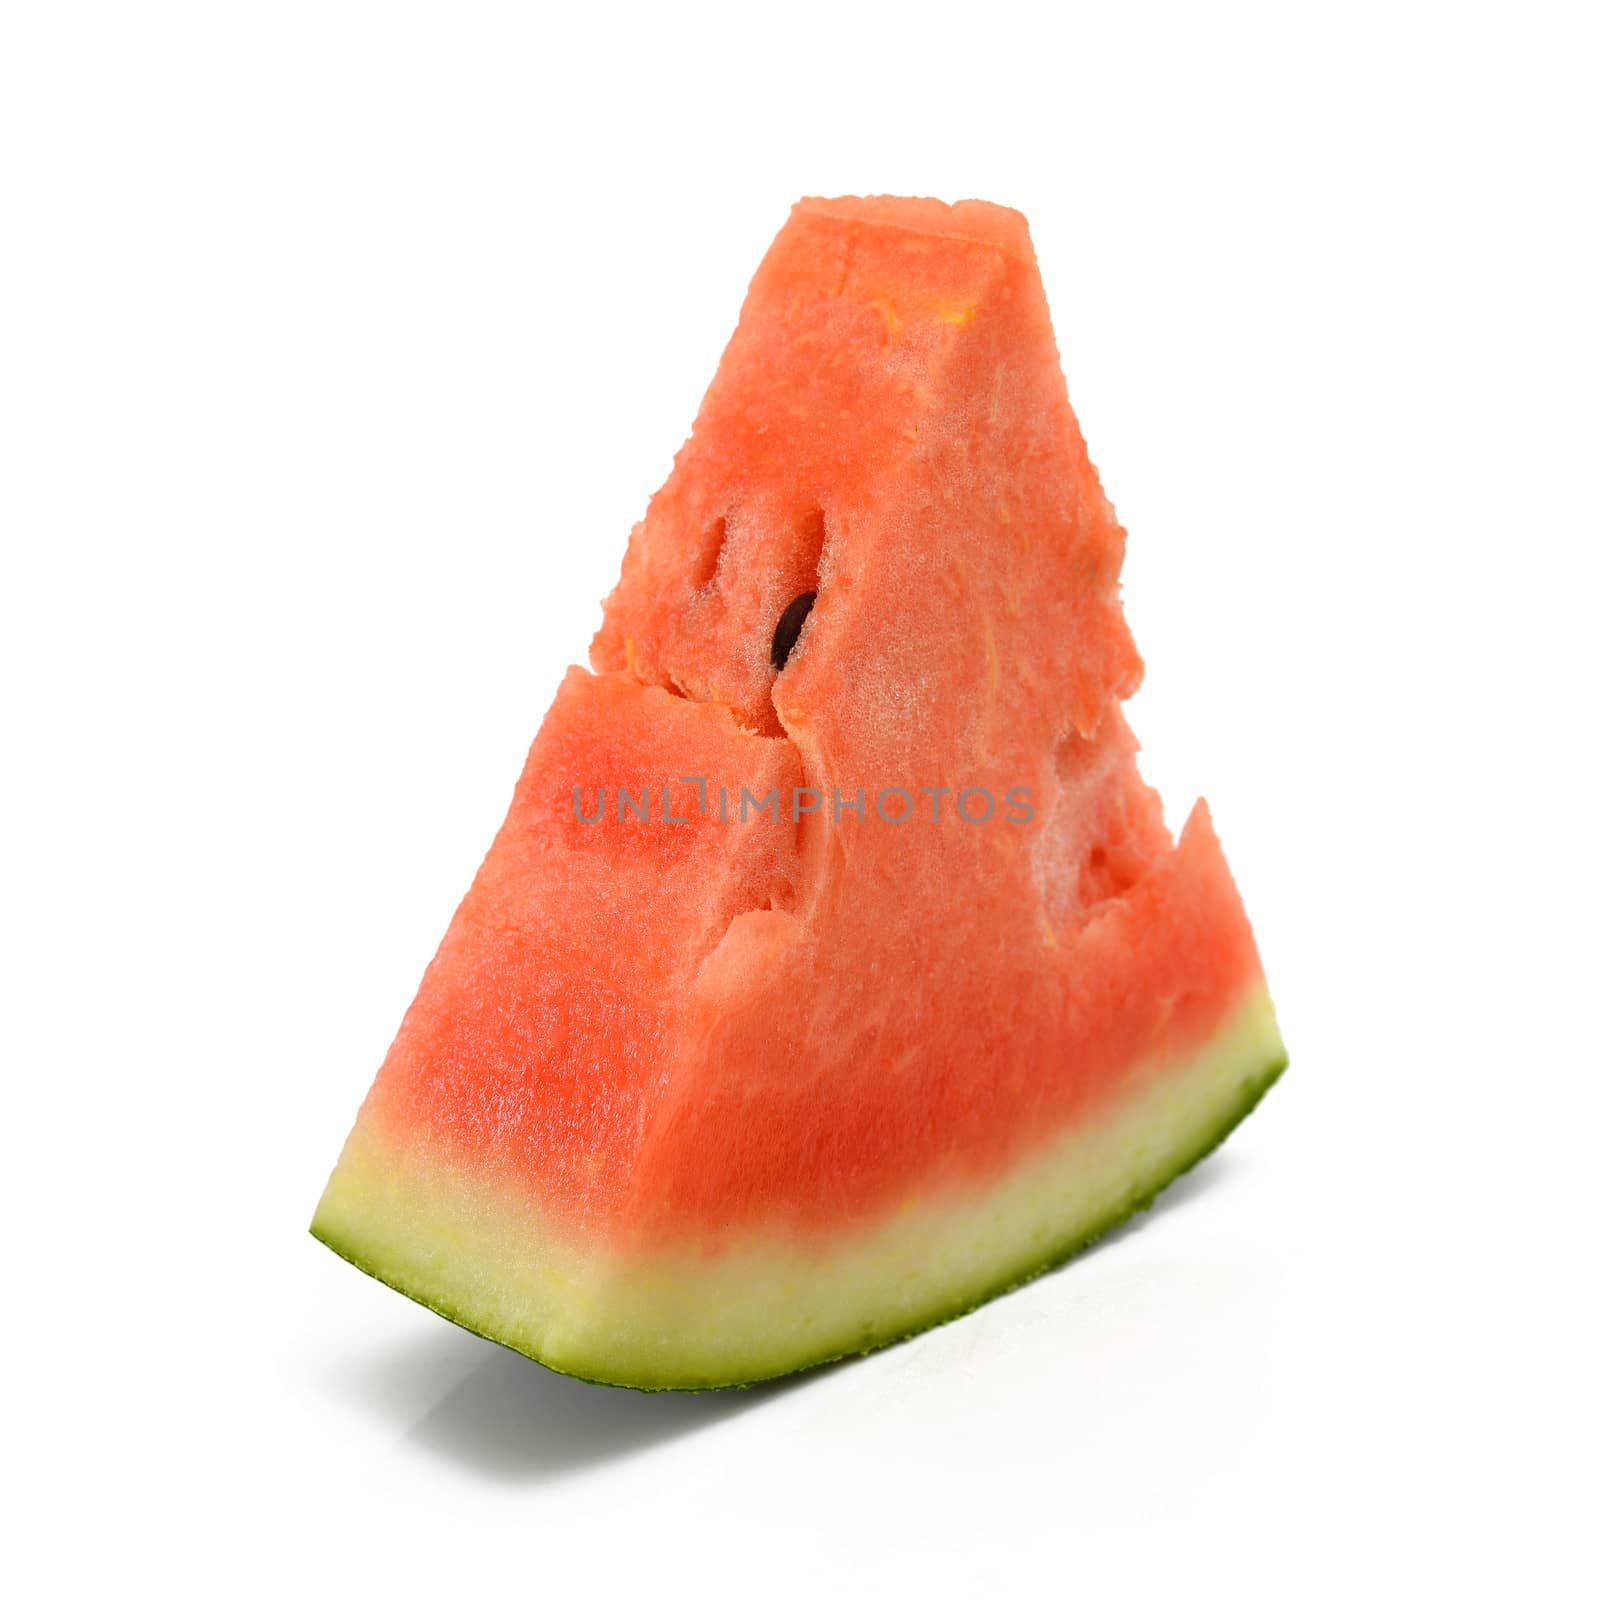 watermelon by antpkr